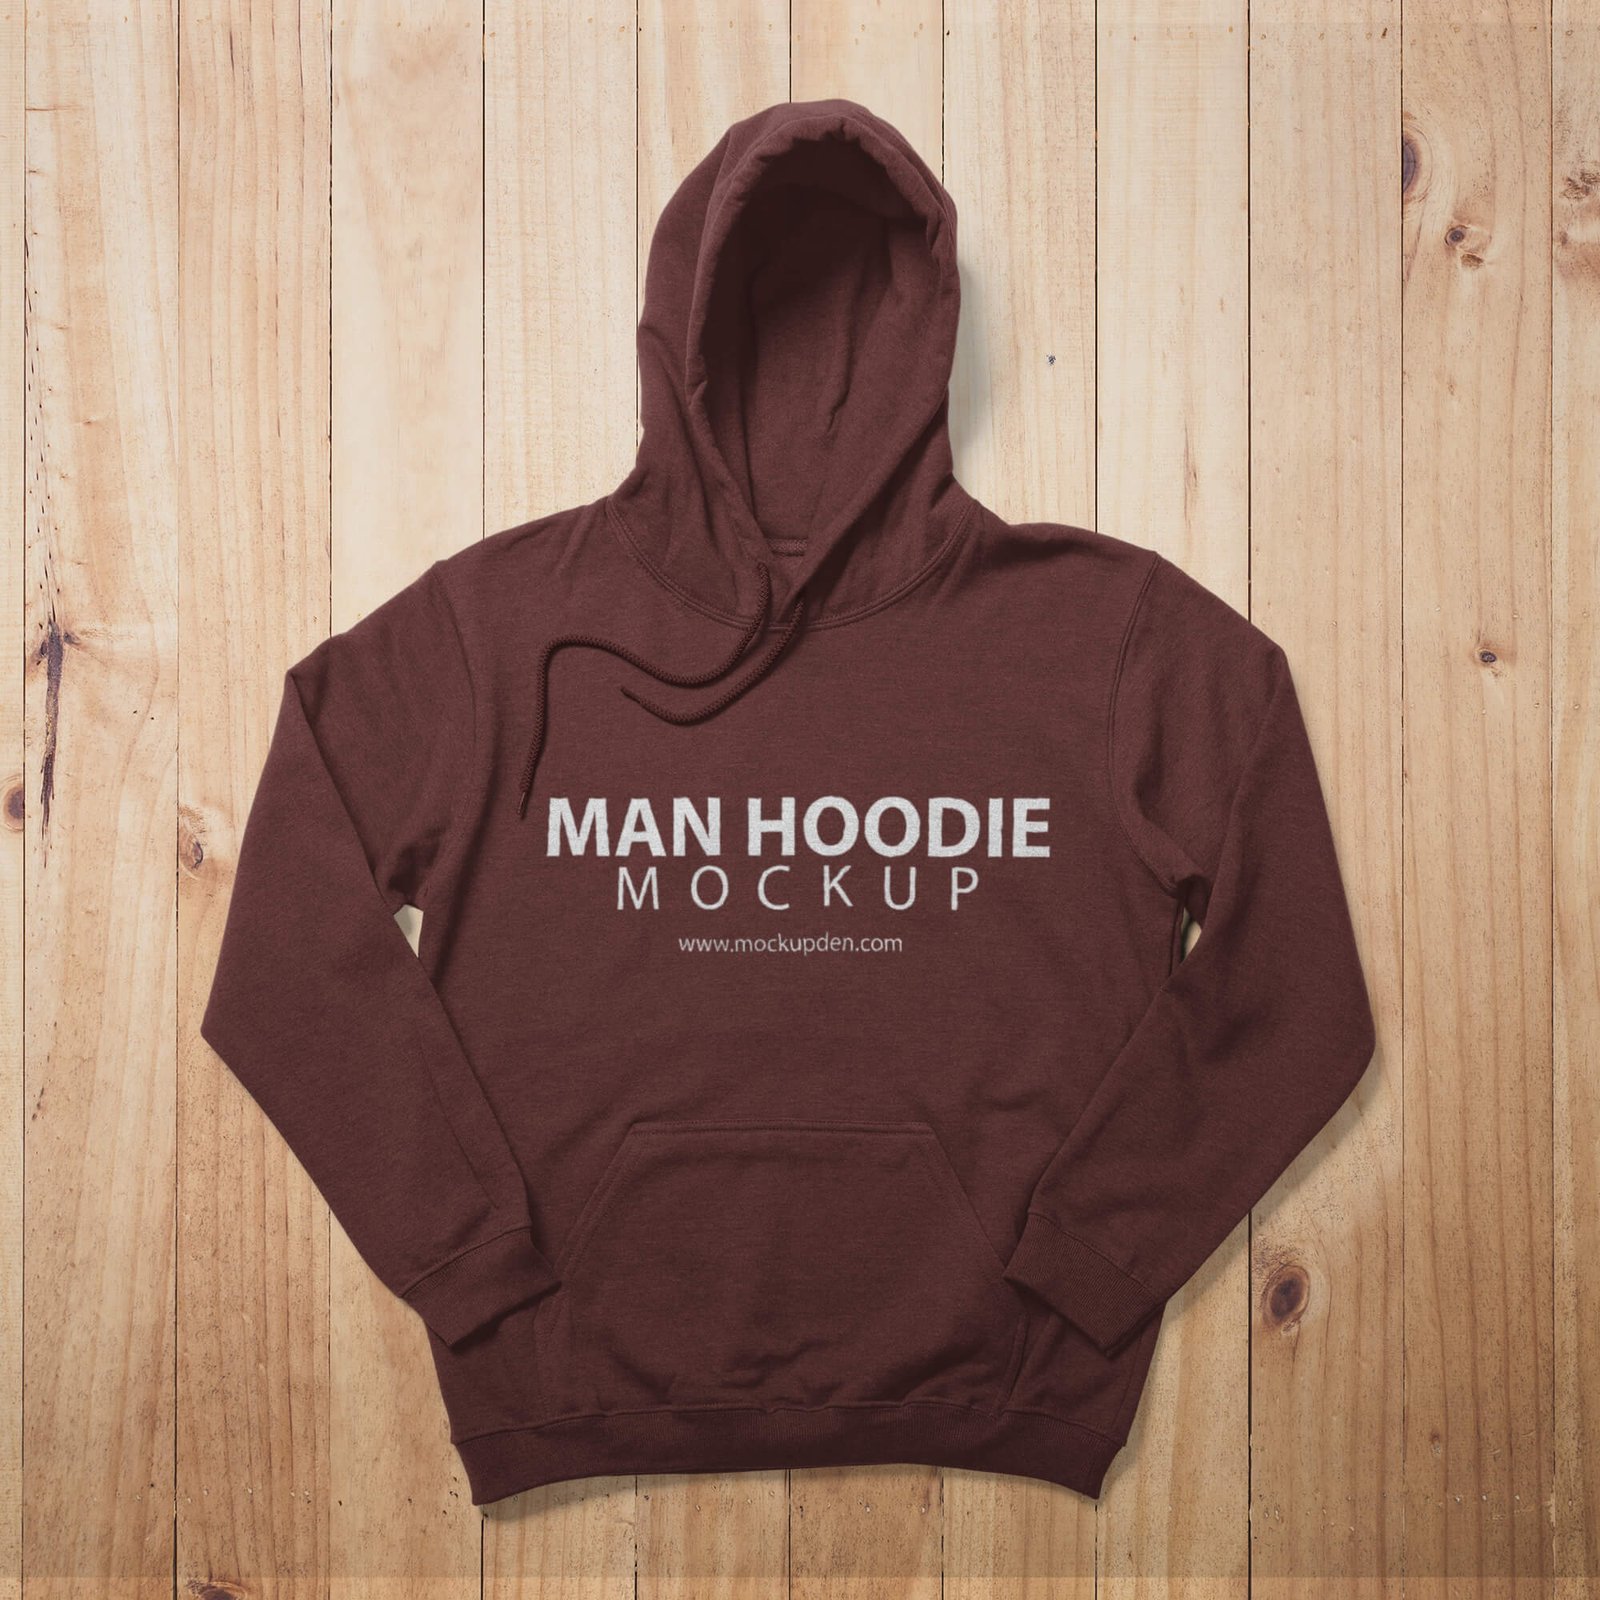 Free Man Hoodie Mockup PSD Template